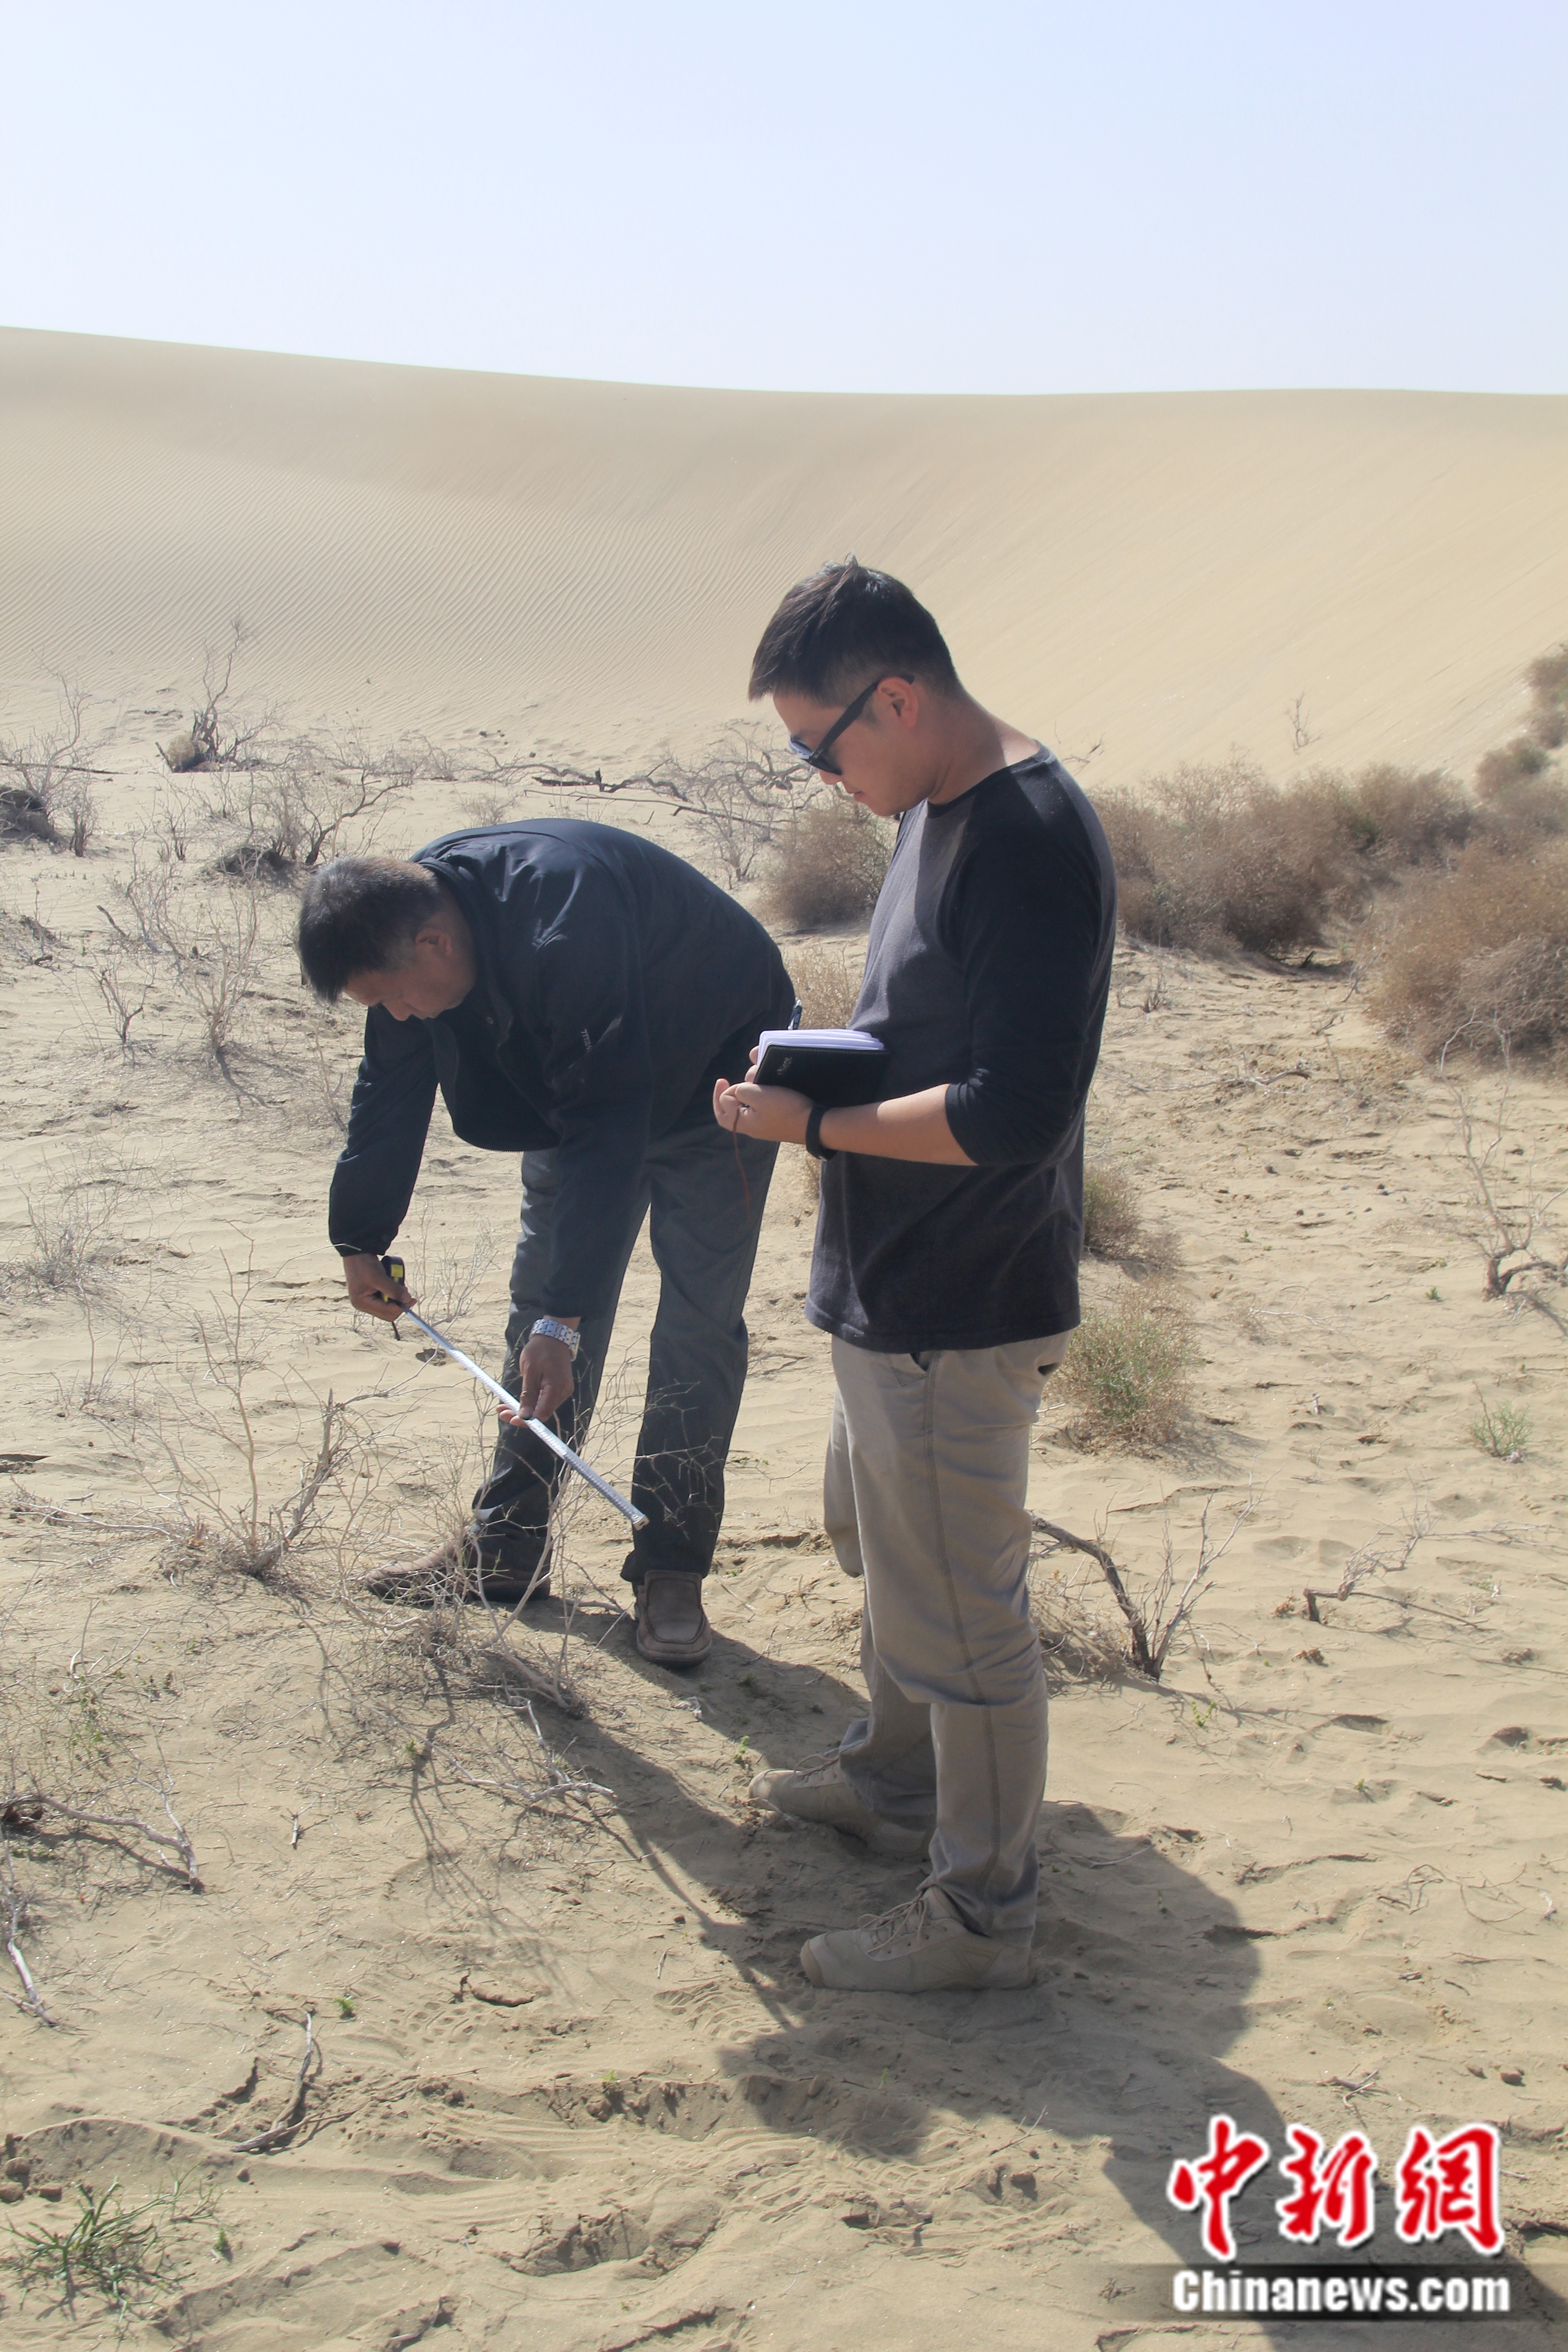 塔克拉玛干沙漠沙化土地植被恢复调查。受访者供图